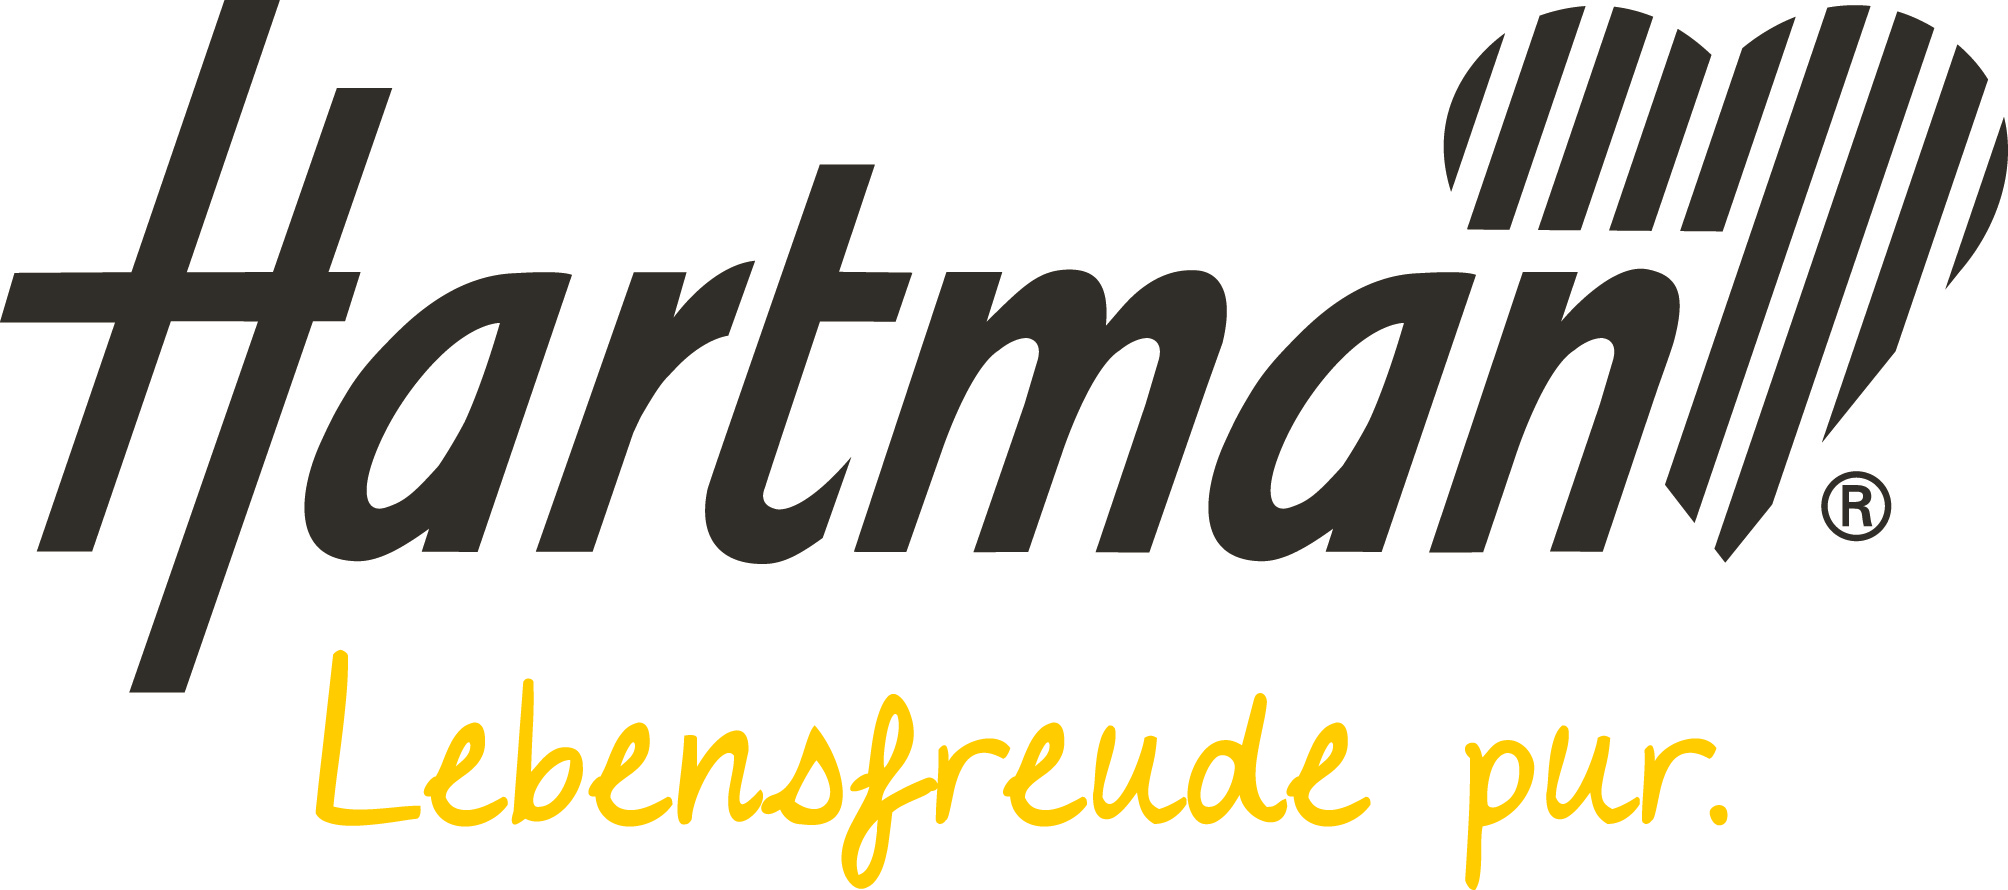 Harttman_Logo